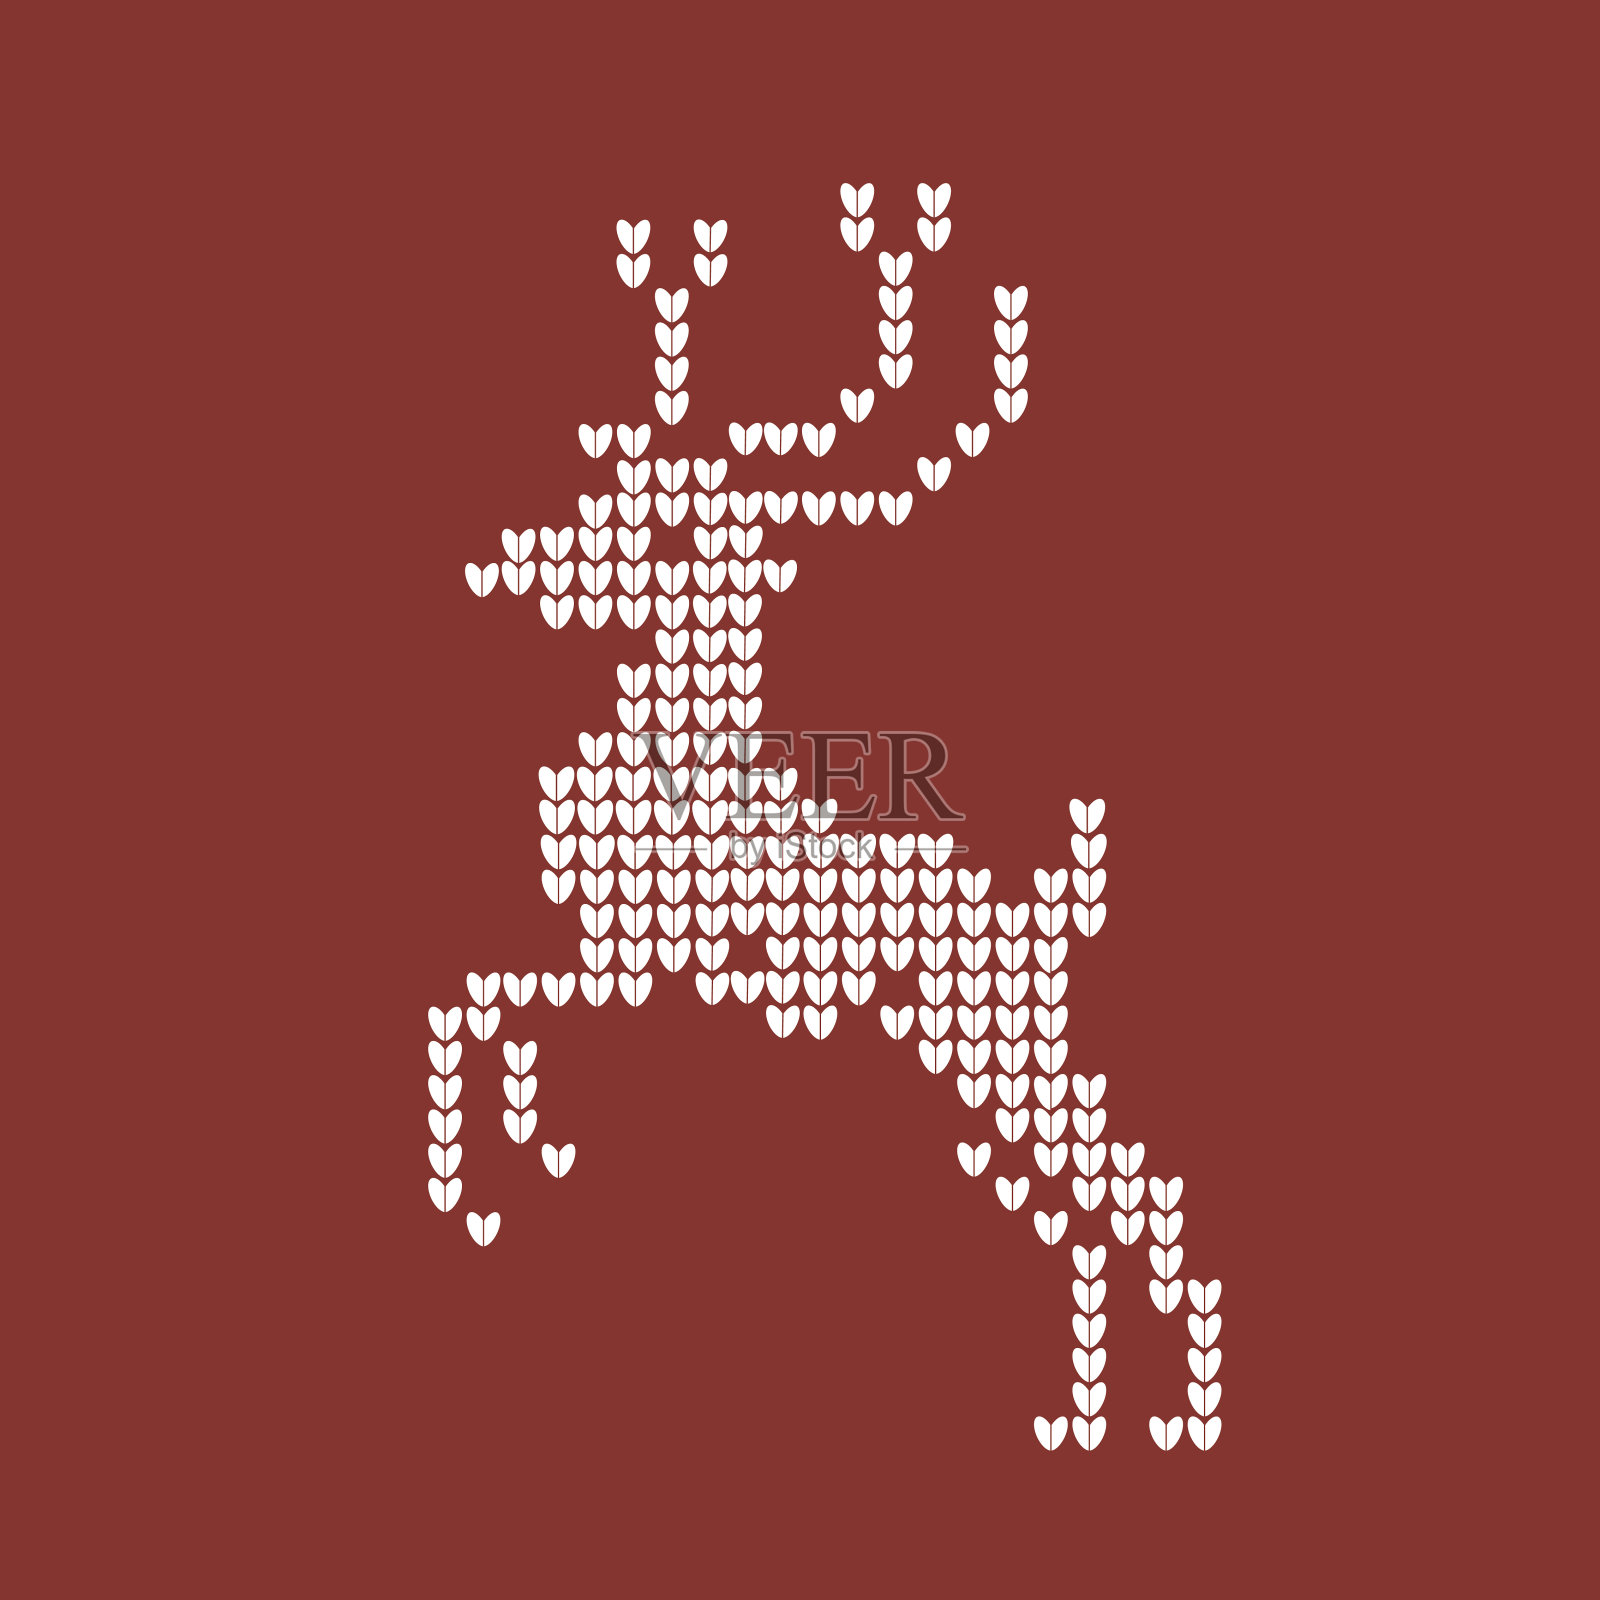 用驯鹿编织的2018圣诞红色背景。向量插画图片素材